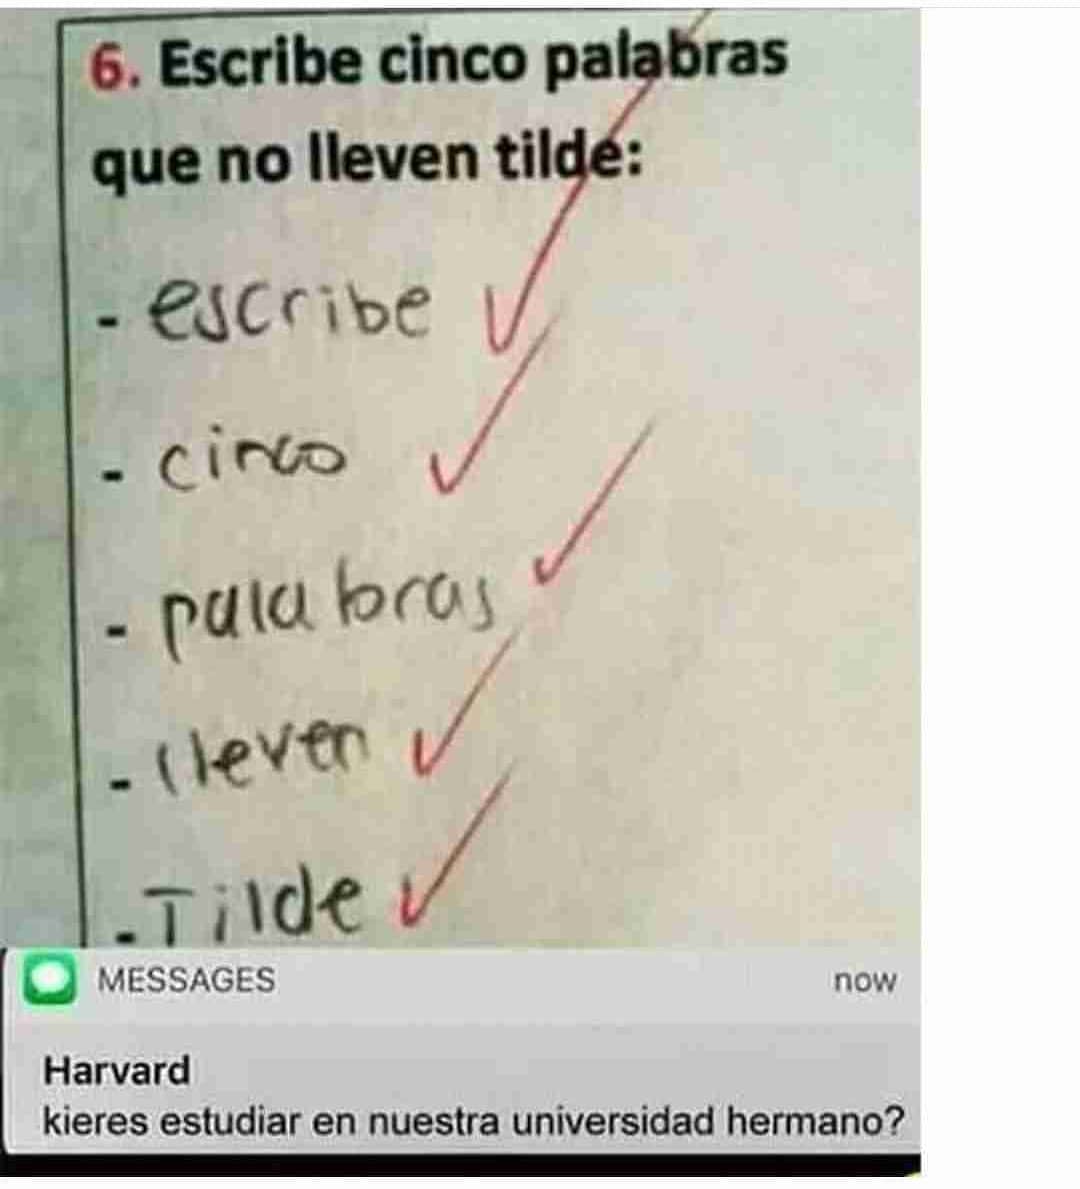 Escribe cinco palabras que no lleven tilde:  Escribe. Cinco. Palabras. Lleven. Tilde.  Harvard: kieres estudiar en nuestra universidad hermano?